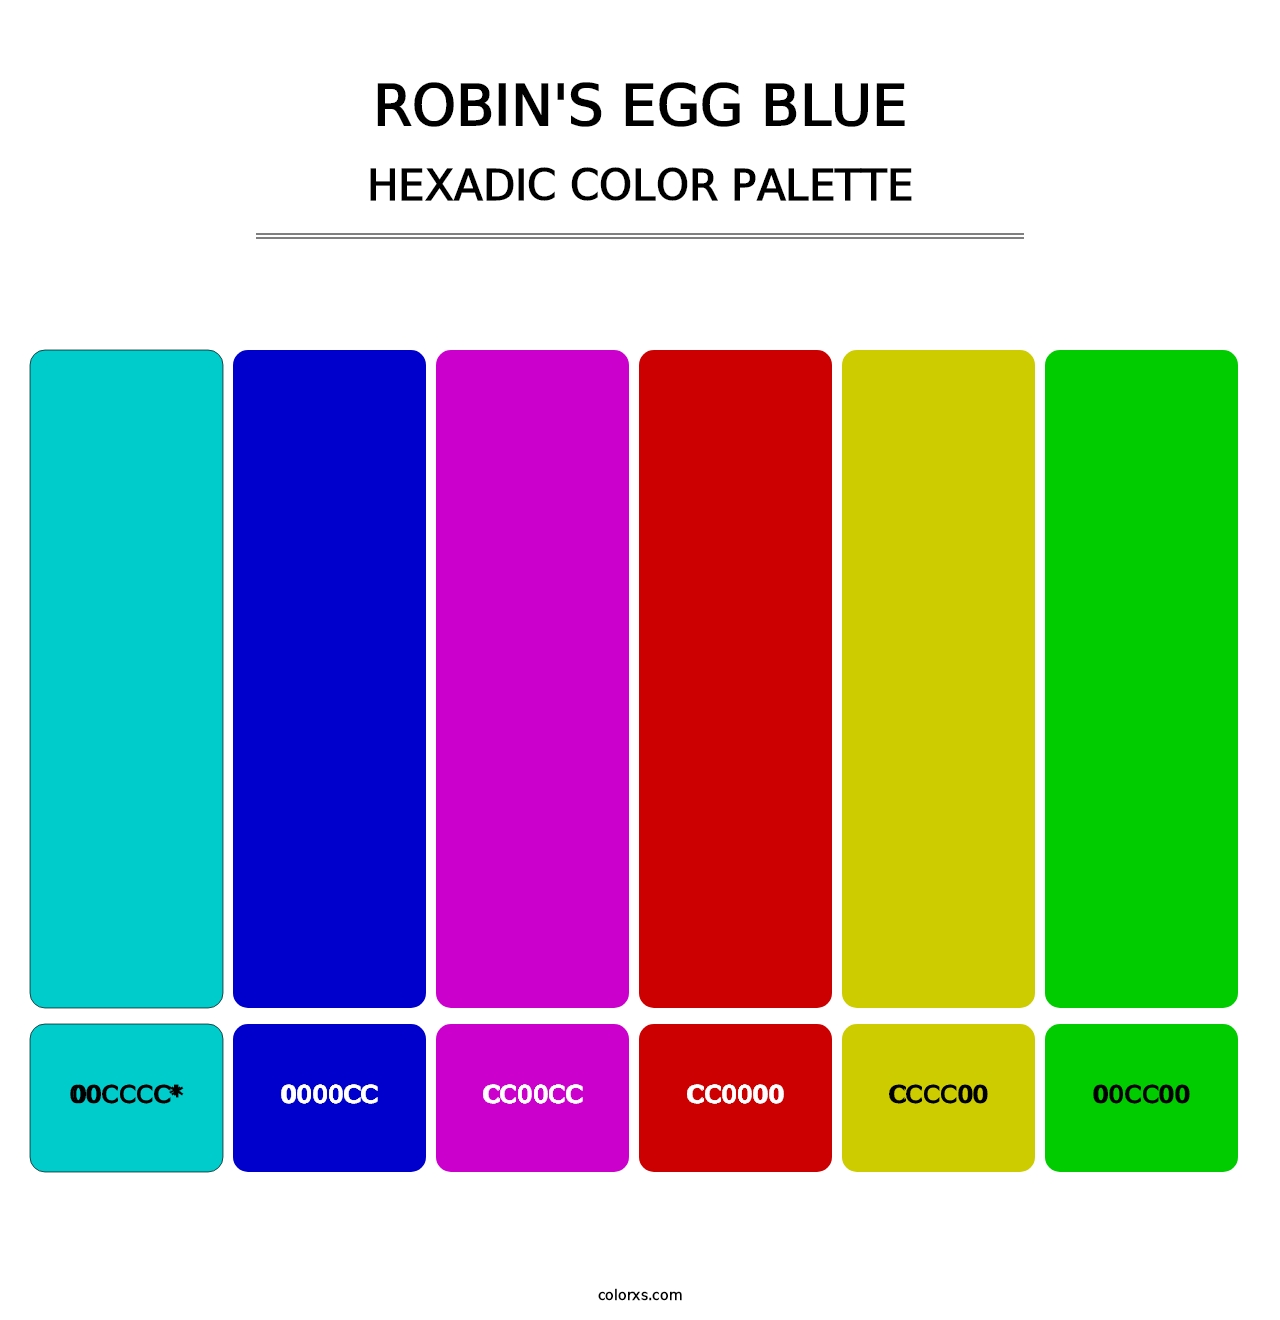 Robin's Egg Blue - Hexadic Color Palette